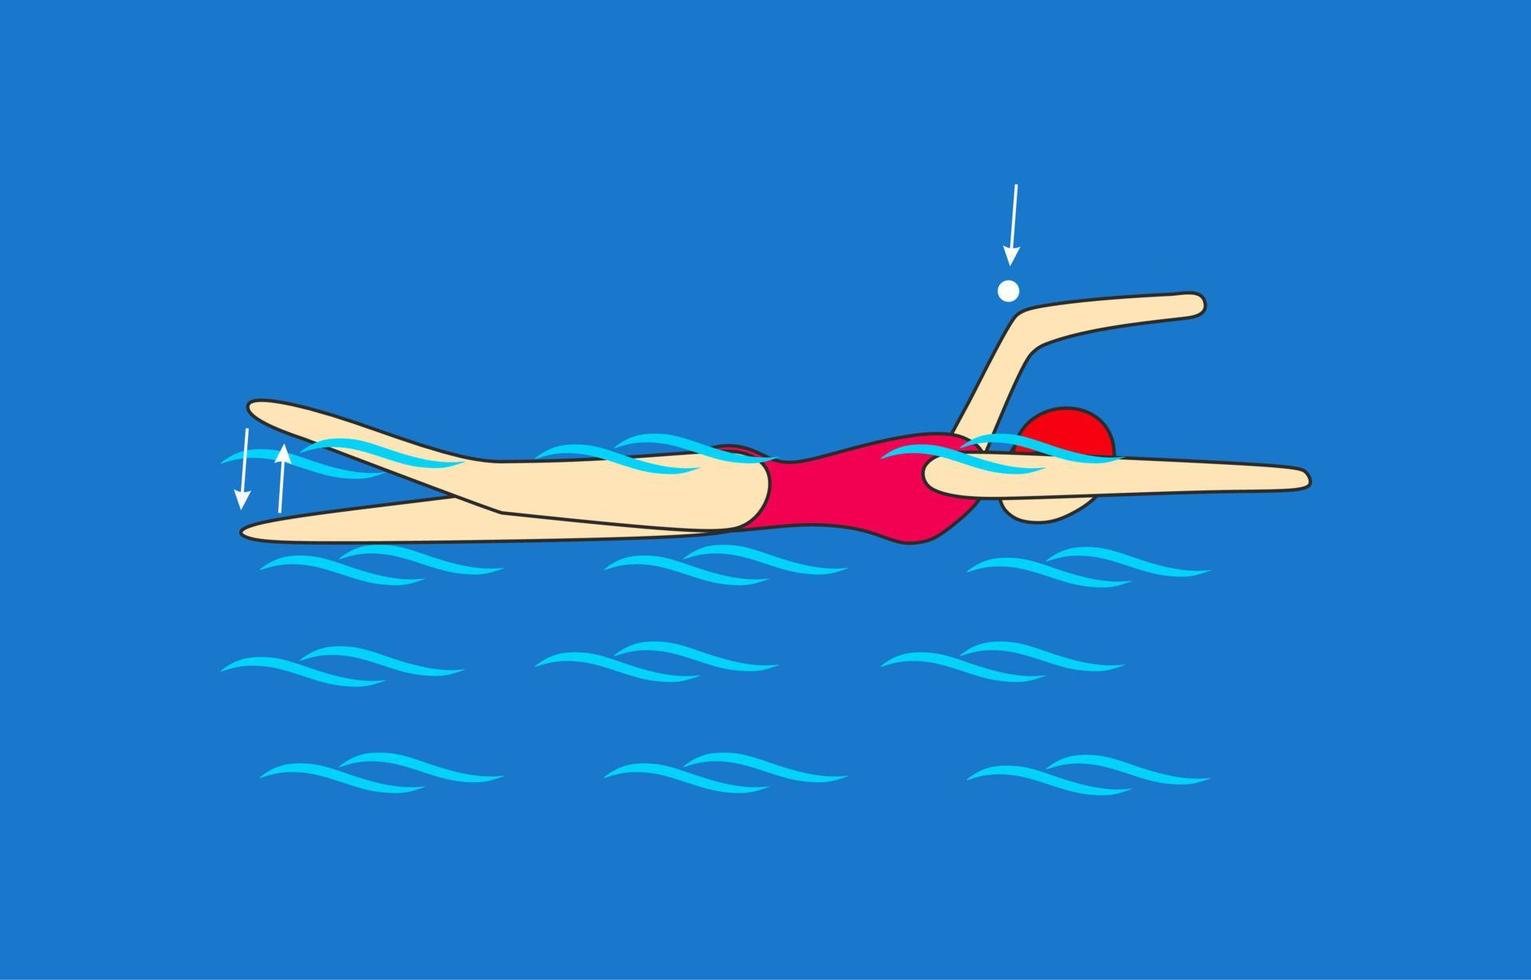 Kraulschwimmen ohne zu atmen, wobei die Position des getragenen Arms am höchsten Punkt fixiert wird. gestartet, wenn die Position der Tragehand den höchsten Stift kreuzt. Schwimmunterricht. vektor